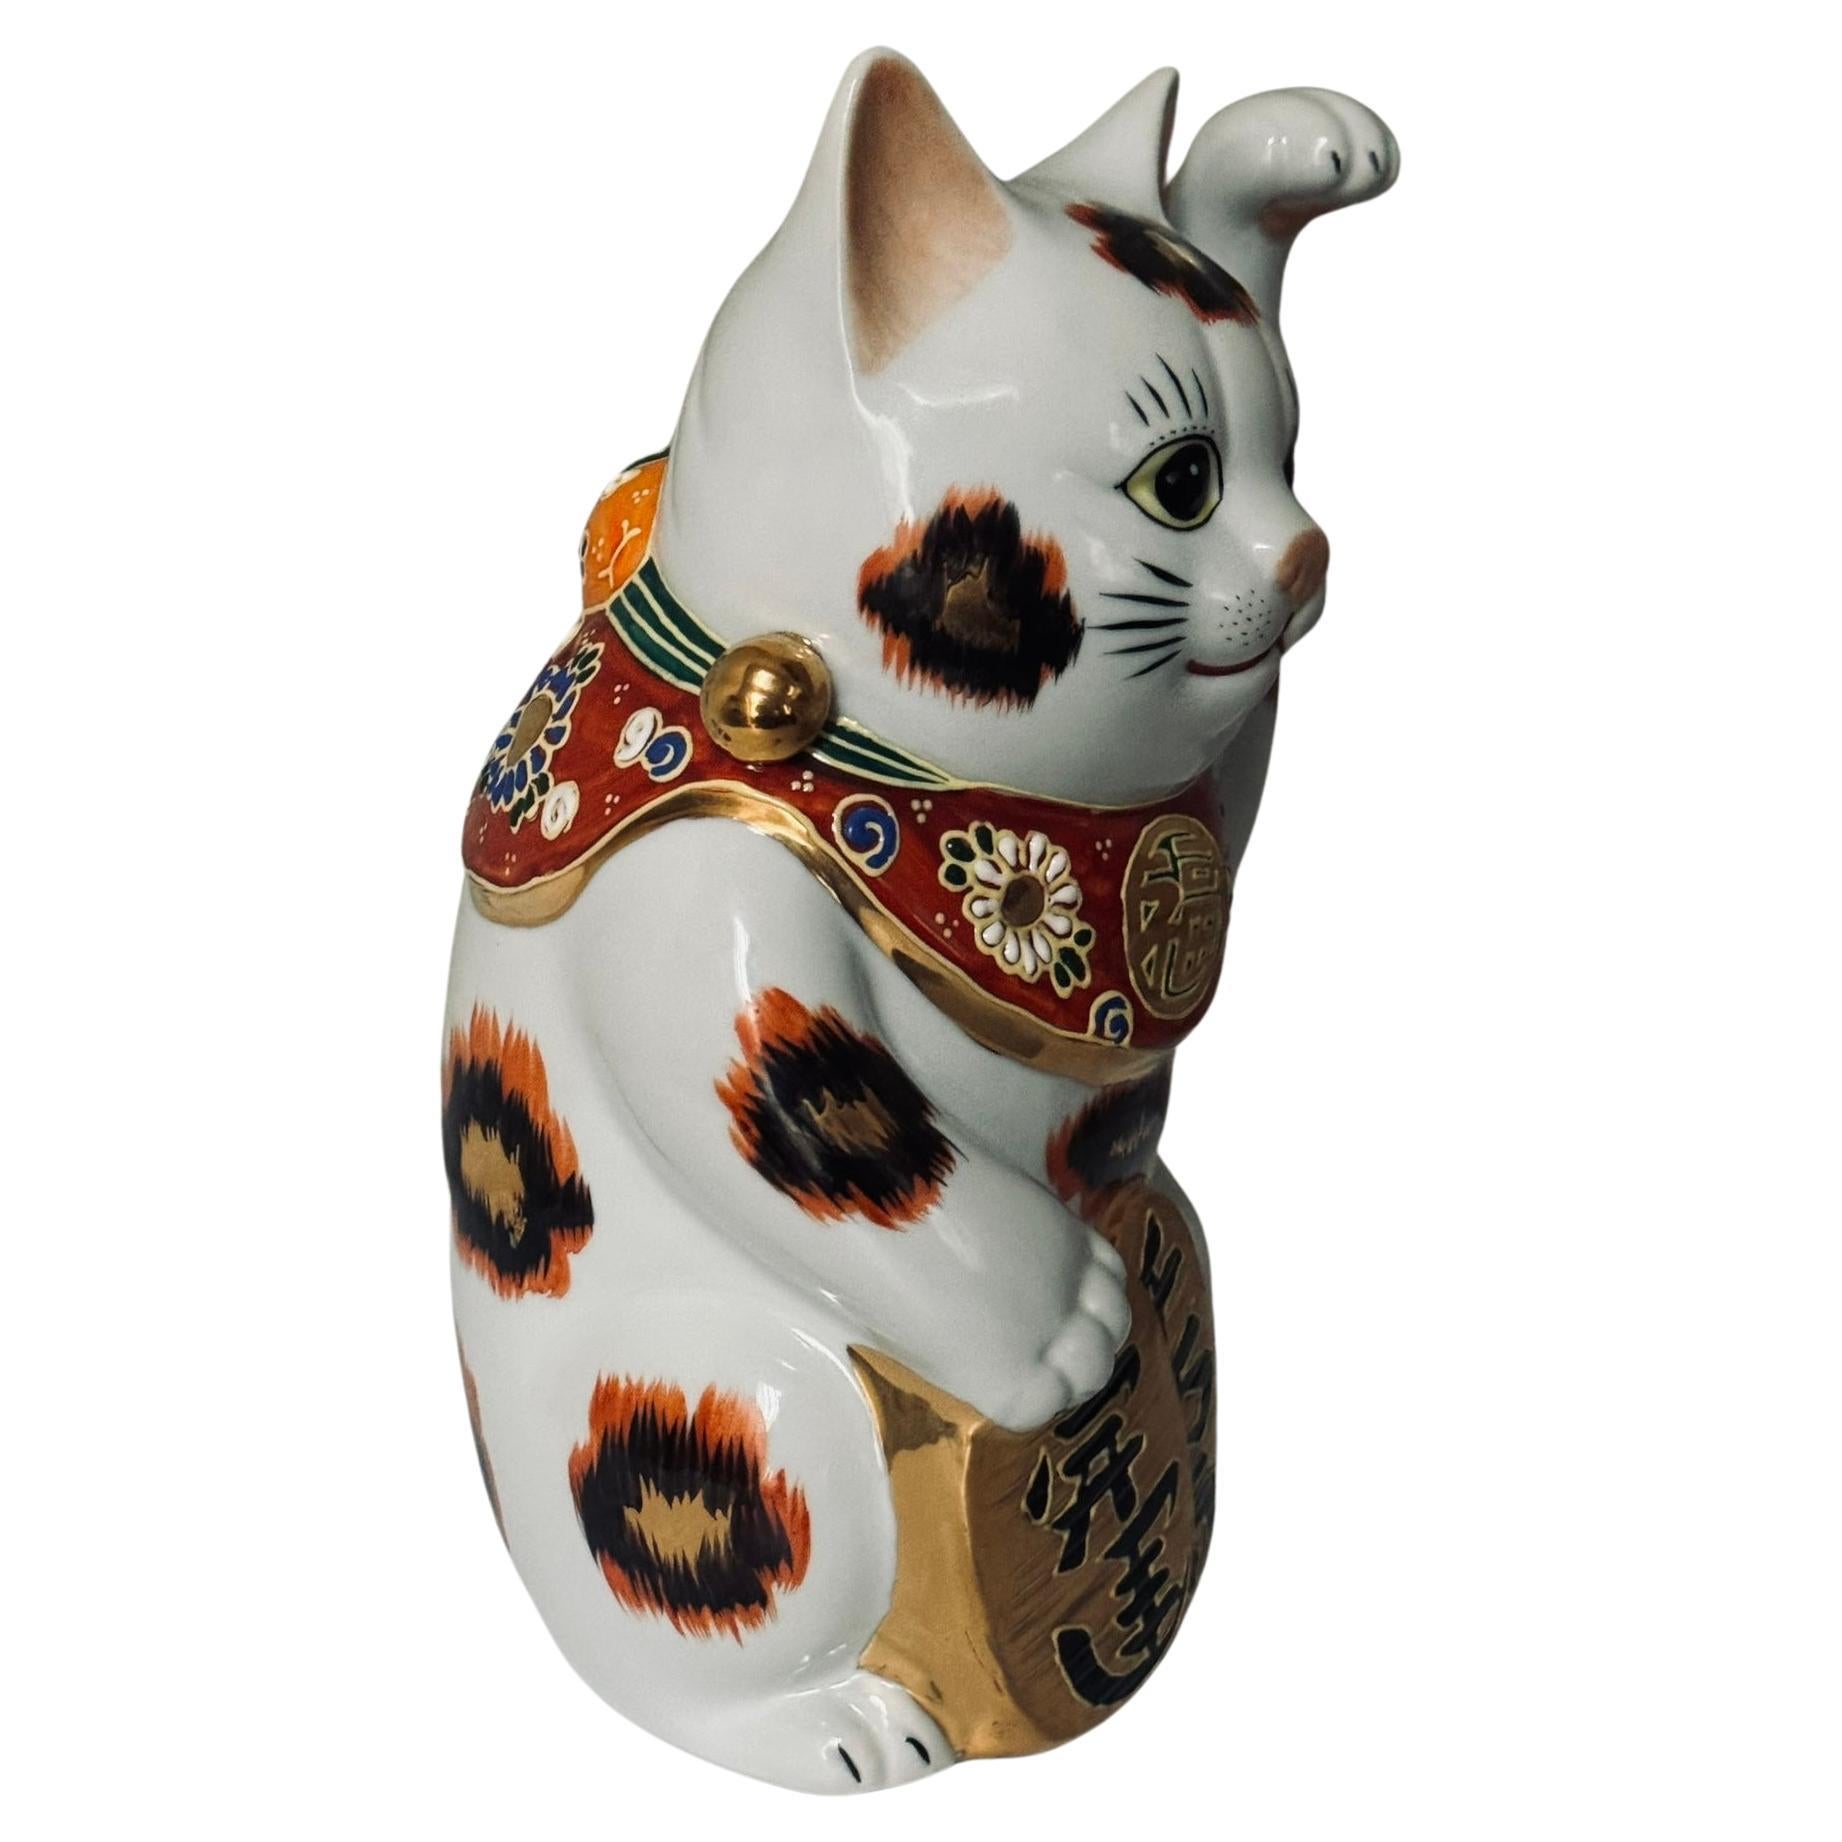 Die charmante, winkende Katze mit erhobener linker Pfote ist ein vergoldetes und handbemaltes Porzellanstück aus der Region Kutani in Japan.
Die winkende Katze gibt es in zwei Varianten. Die häufiger anzutreffende rechtshändige winkende Katze (mit